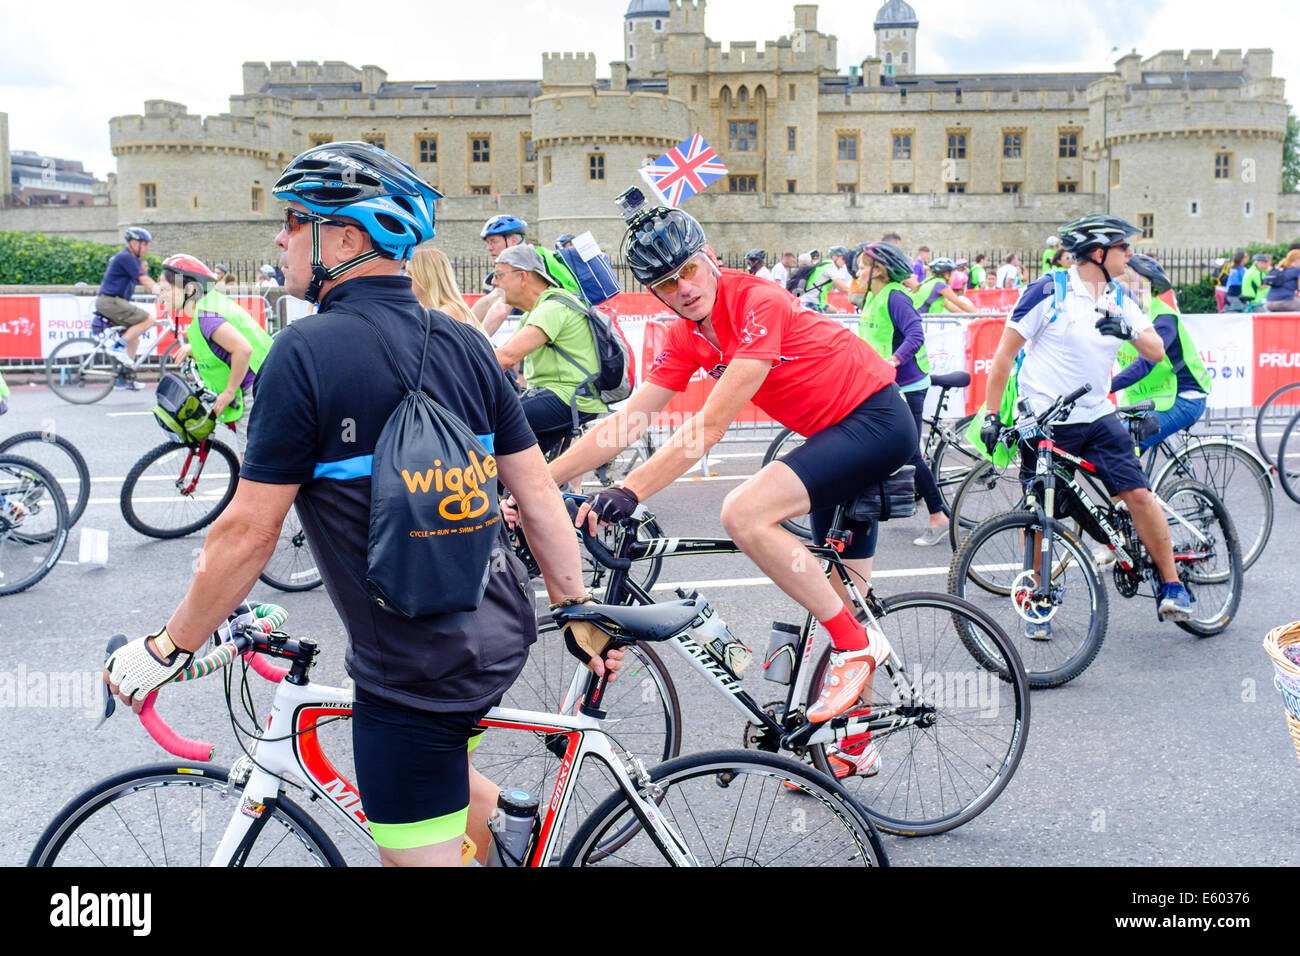 Cavaliers dans la Prudential RideLondon Freecycle event pass la Tour de Londres Banque D'Images